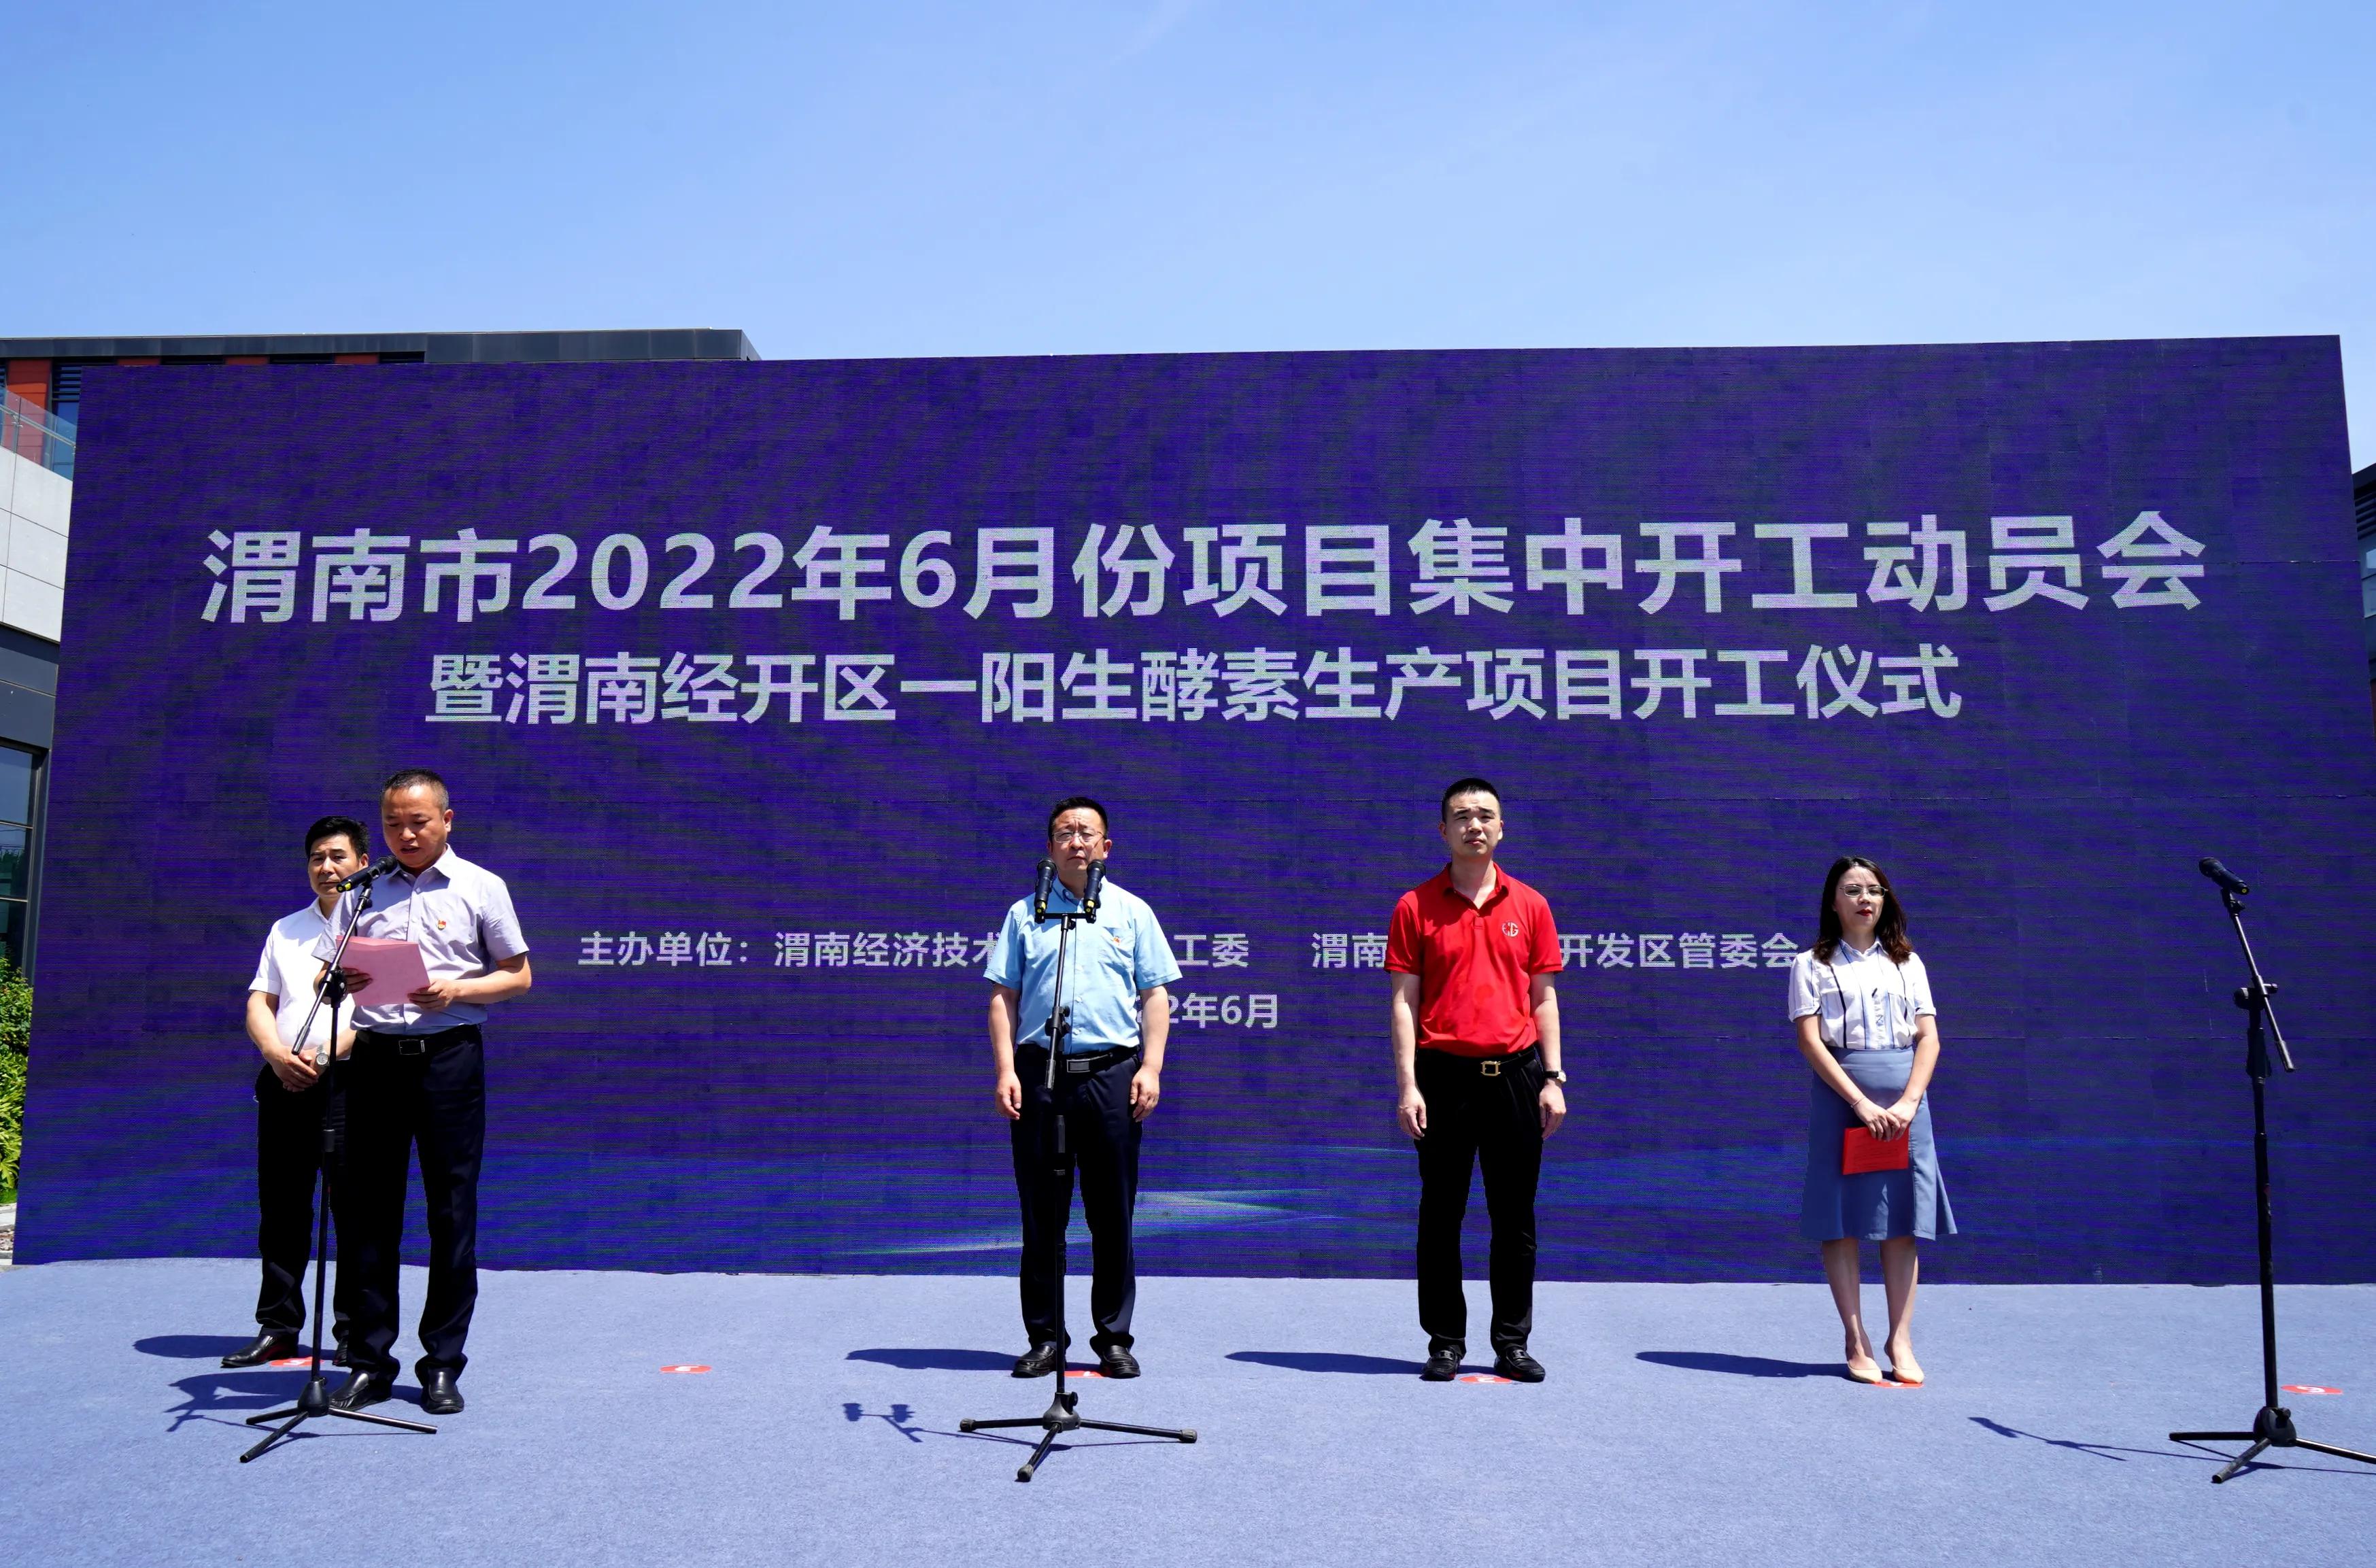 渭南经开区举行2022年第6次项目集中开工动员会